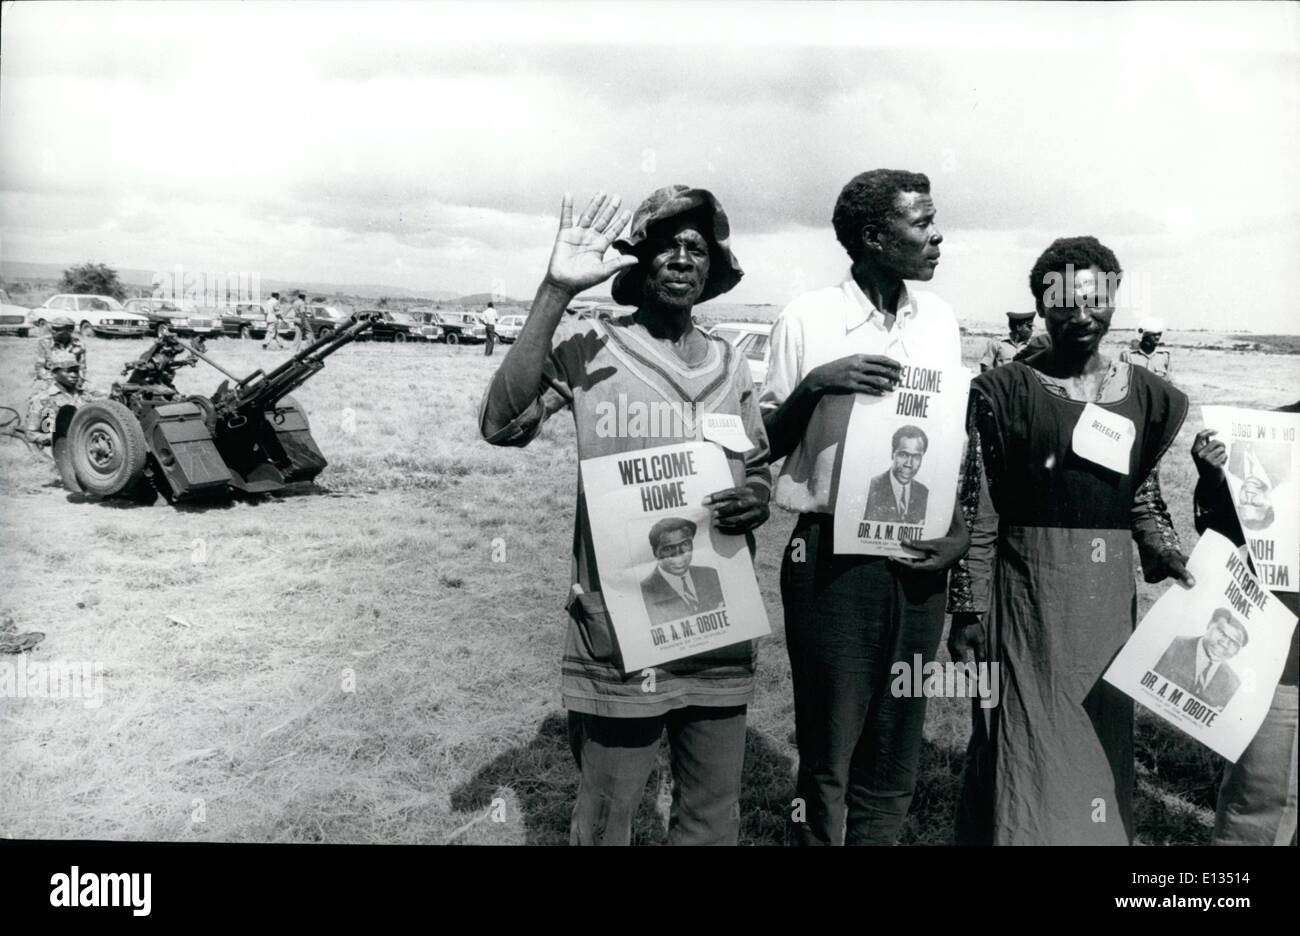 Febbraio 26, 2012 - Obote torna in Uganda; a Mberera pista di atterraggio per aerei - alcuni di Obote sostenitori con welcome home cartelloni. In background è la Tanzania pistola di difesa contraerea presidiata da soldati della Tanzania. Foto Stock